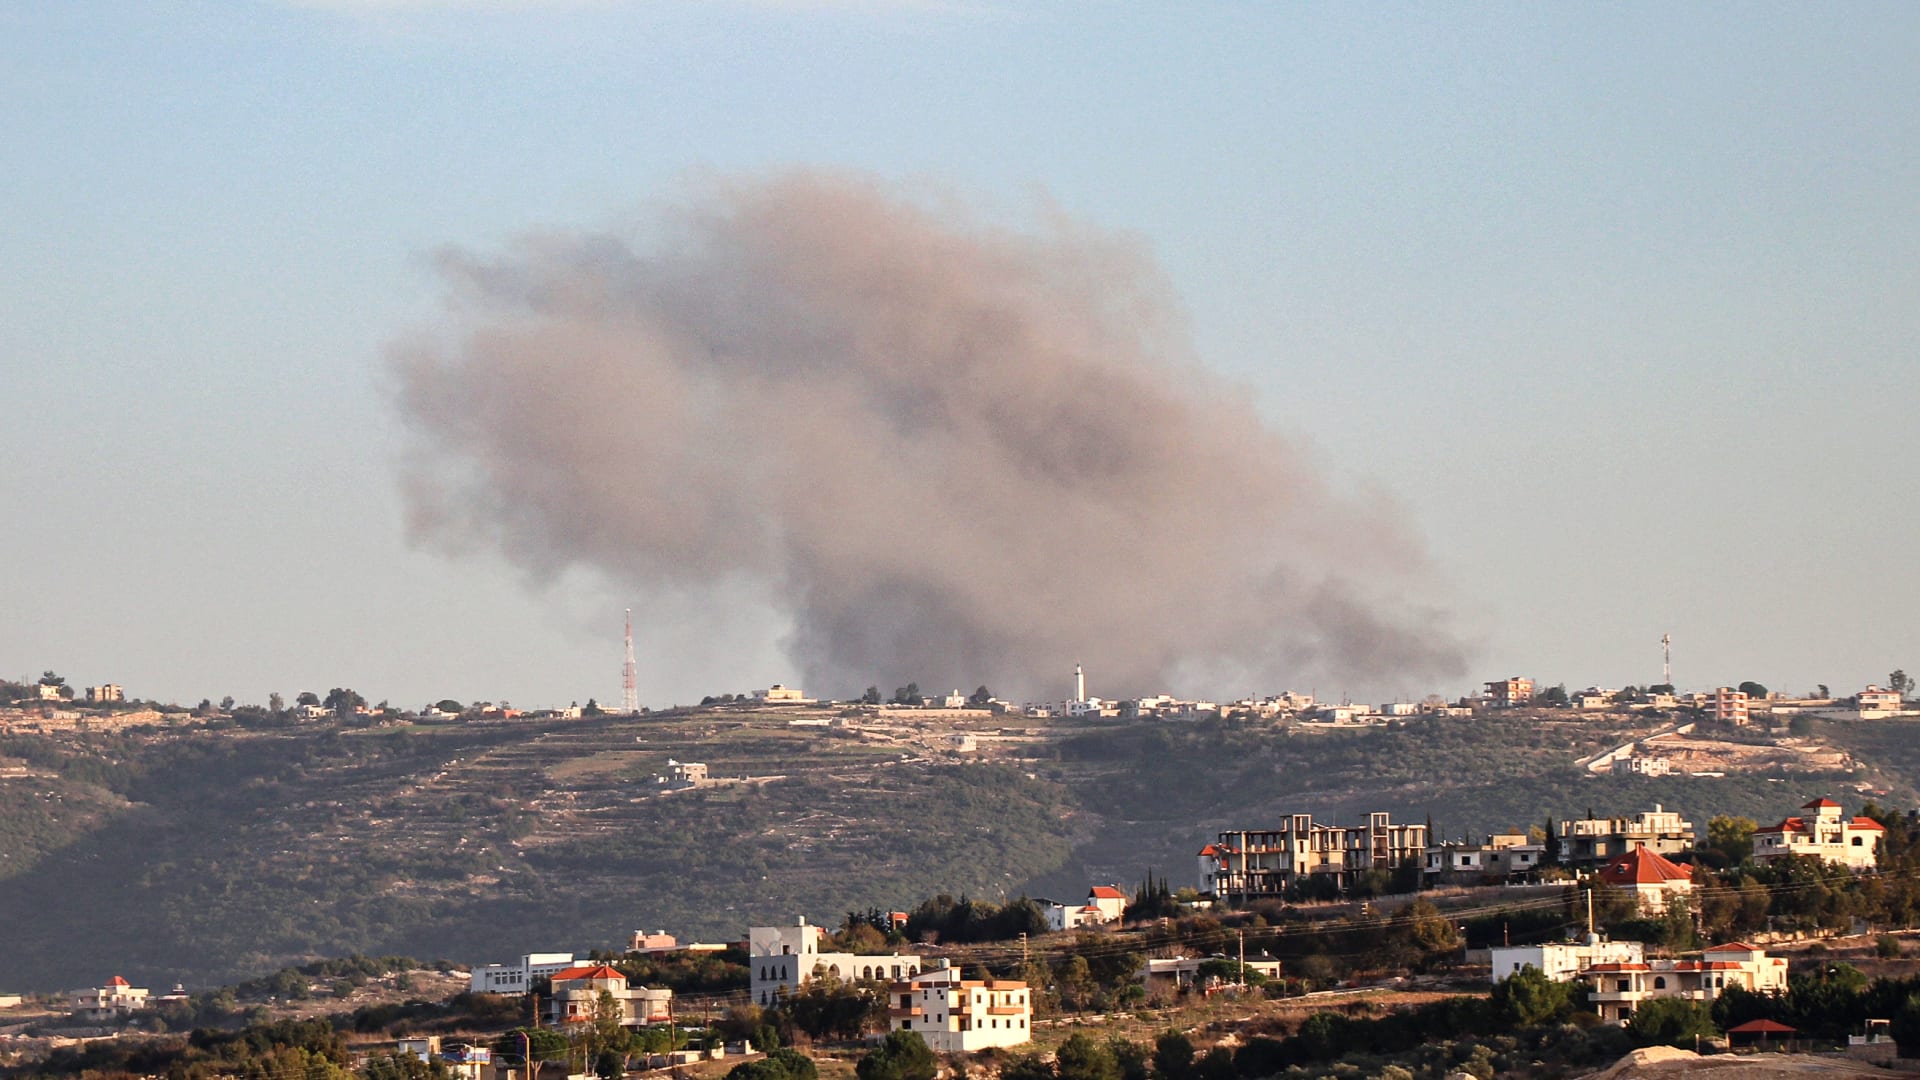 غوتيريش لـCNN : لبنان "لن ينجو" وسيُدمر "بالكامل" حال تصعيد المواجهة مع إسرائيل